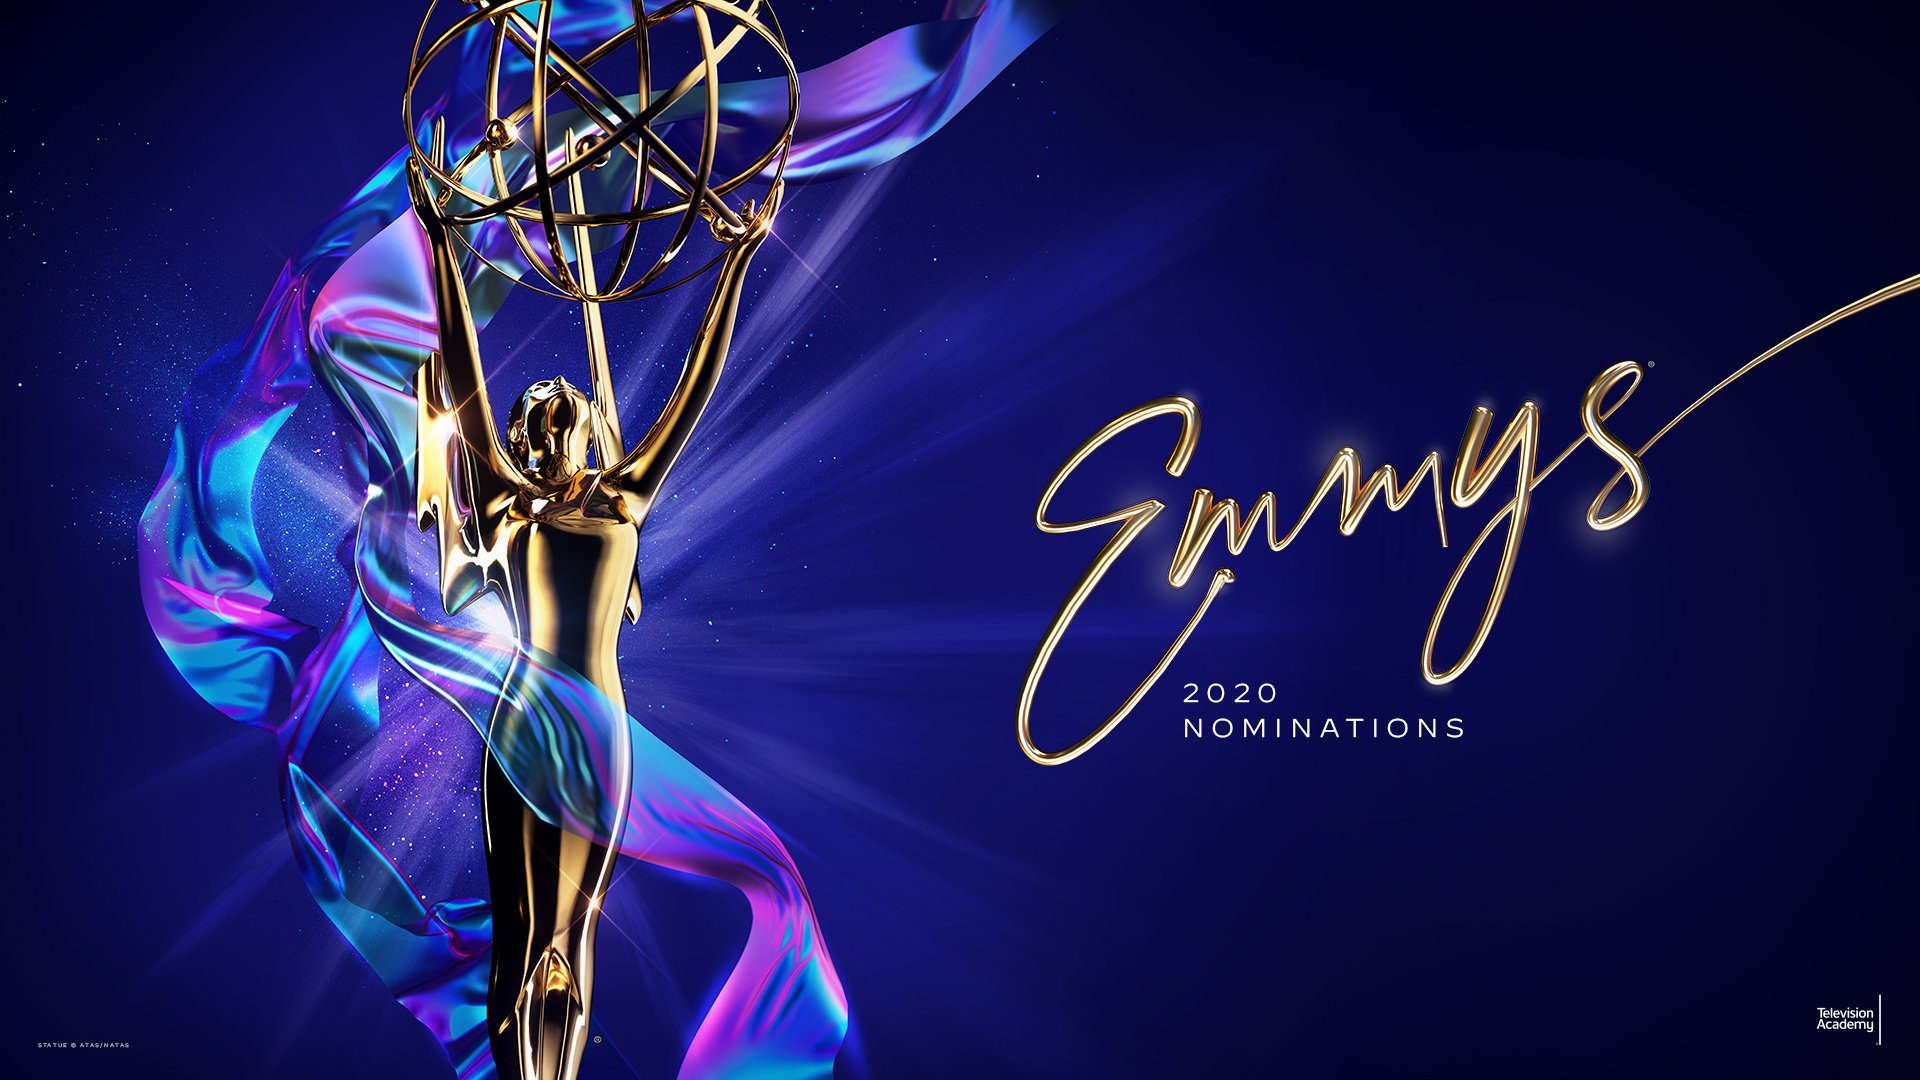 ¿Quiénes ganarán y quiénes son los grandes olvidados de los Emmys? Revisamos las nominaciones junto a Michelle Martínez